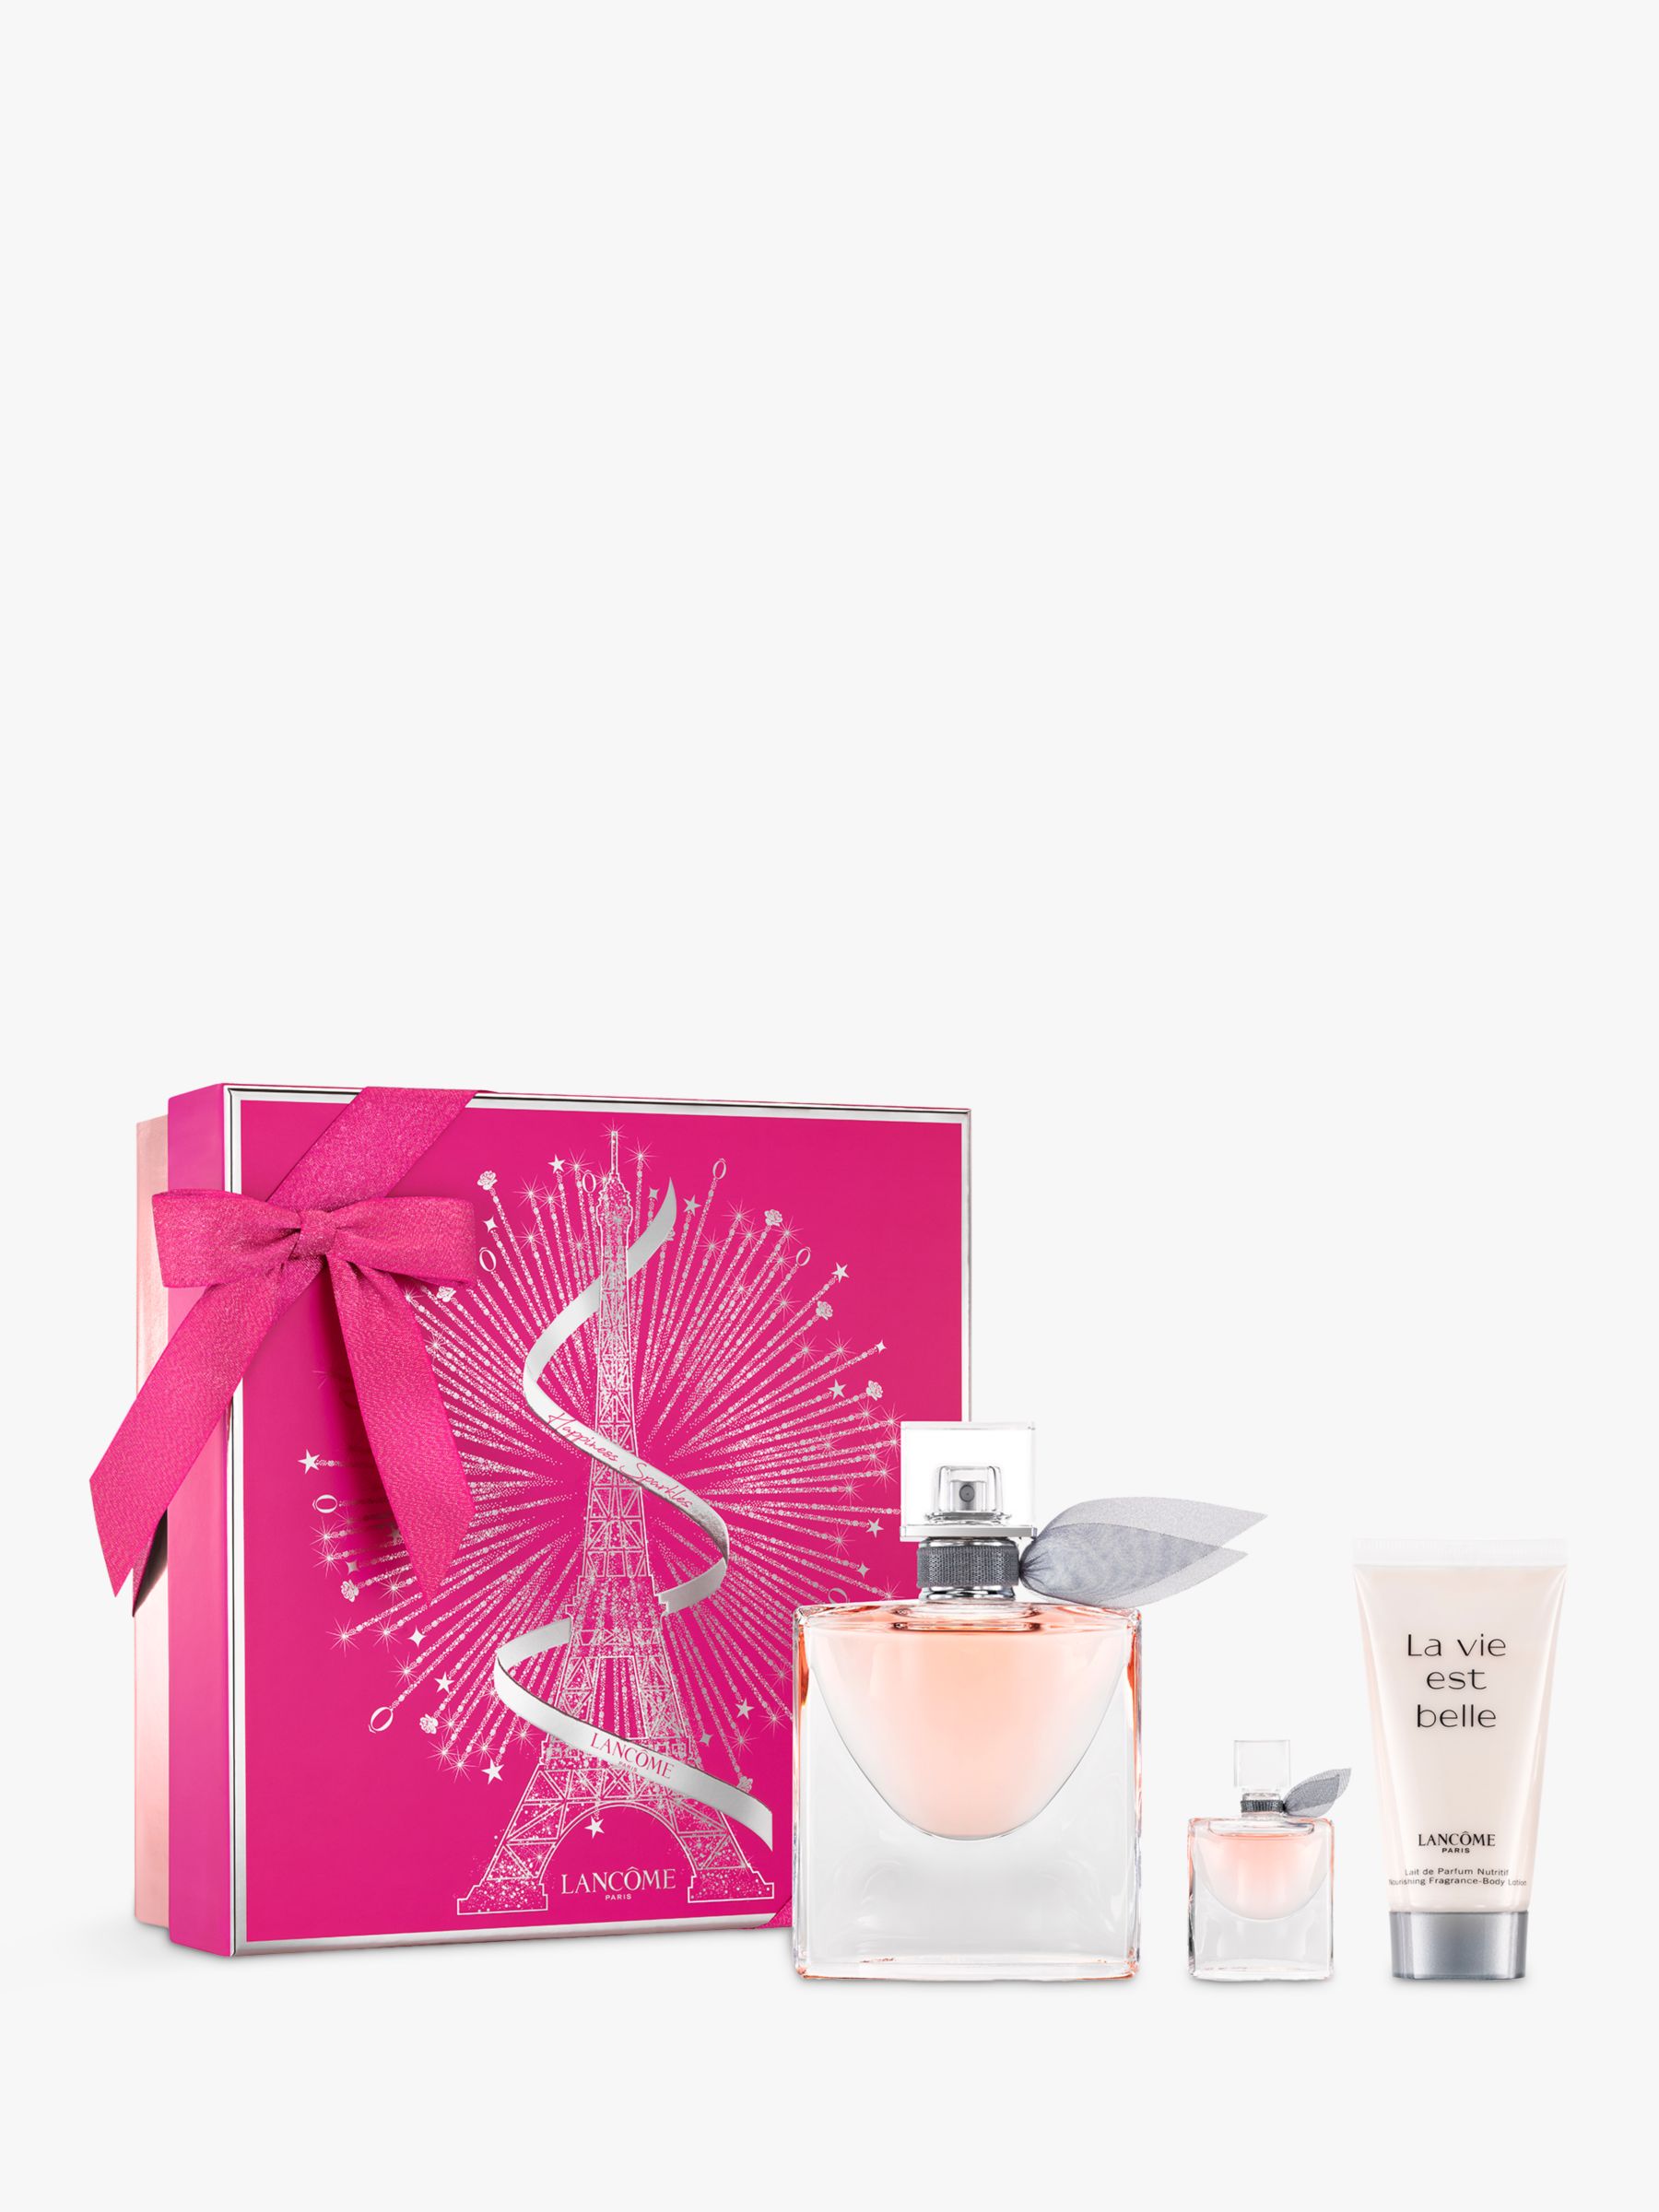 Lancôme La Vie Est Belle 50ml Eau de Parfum Fragrance Gift Set at John Lewis & Partners